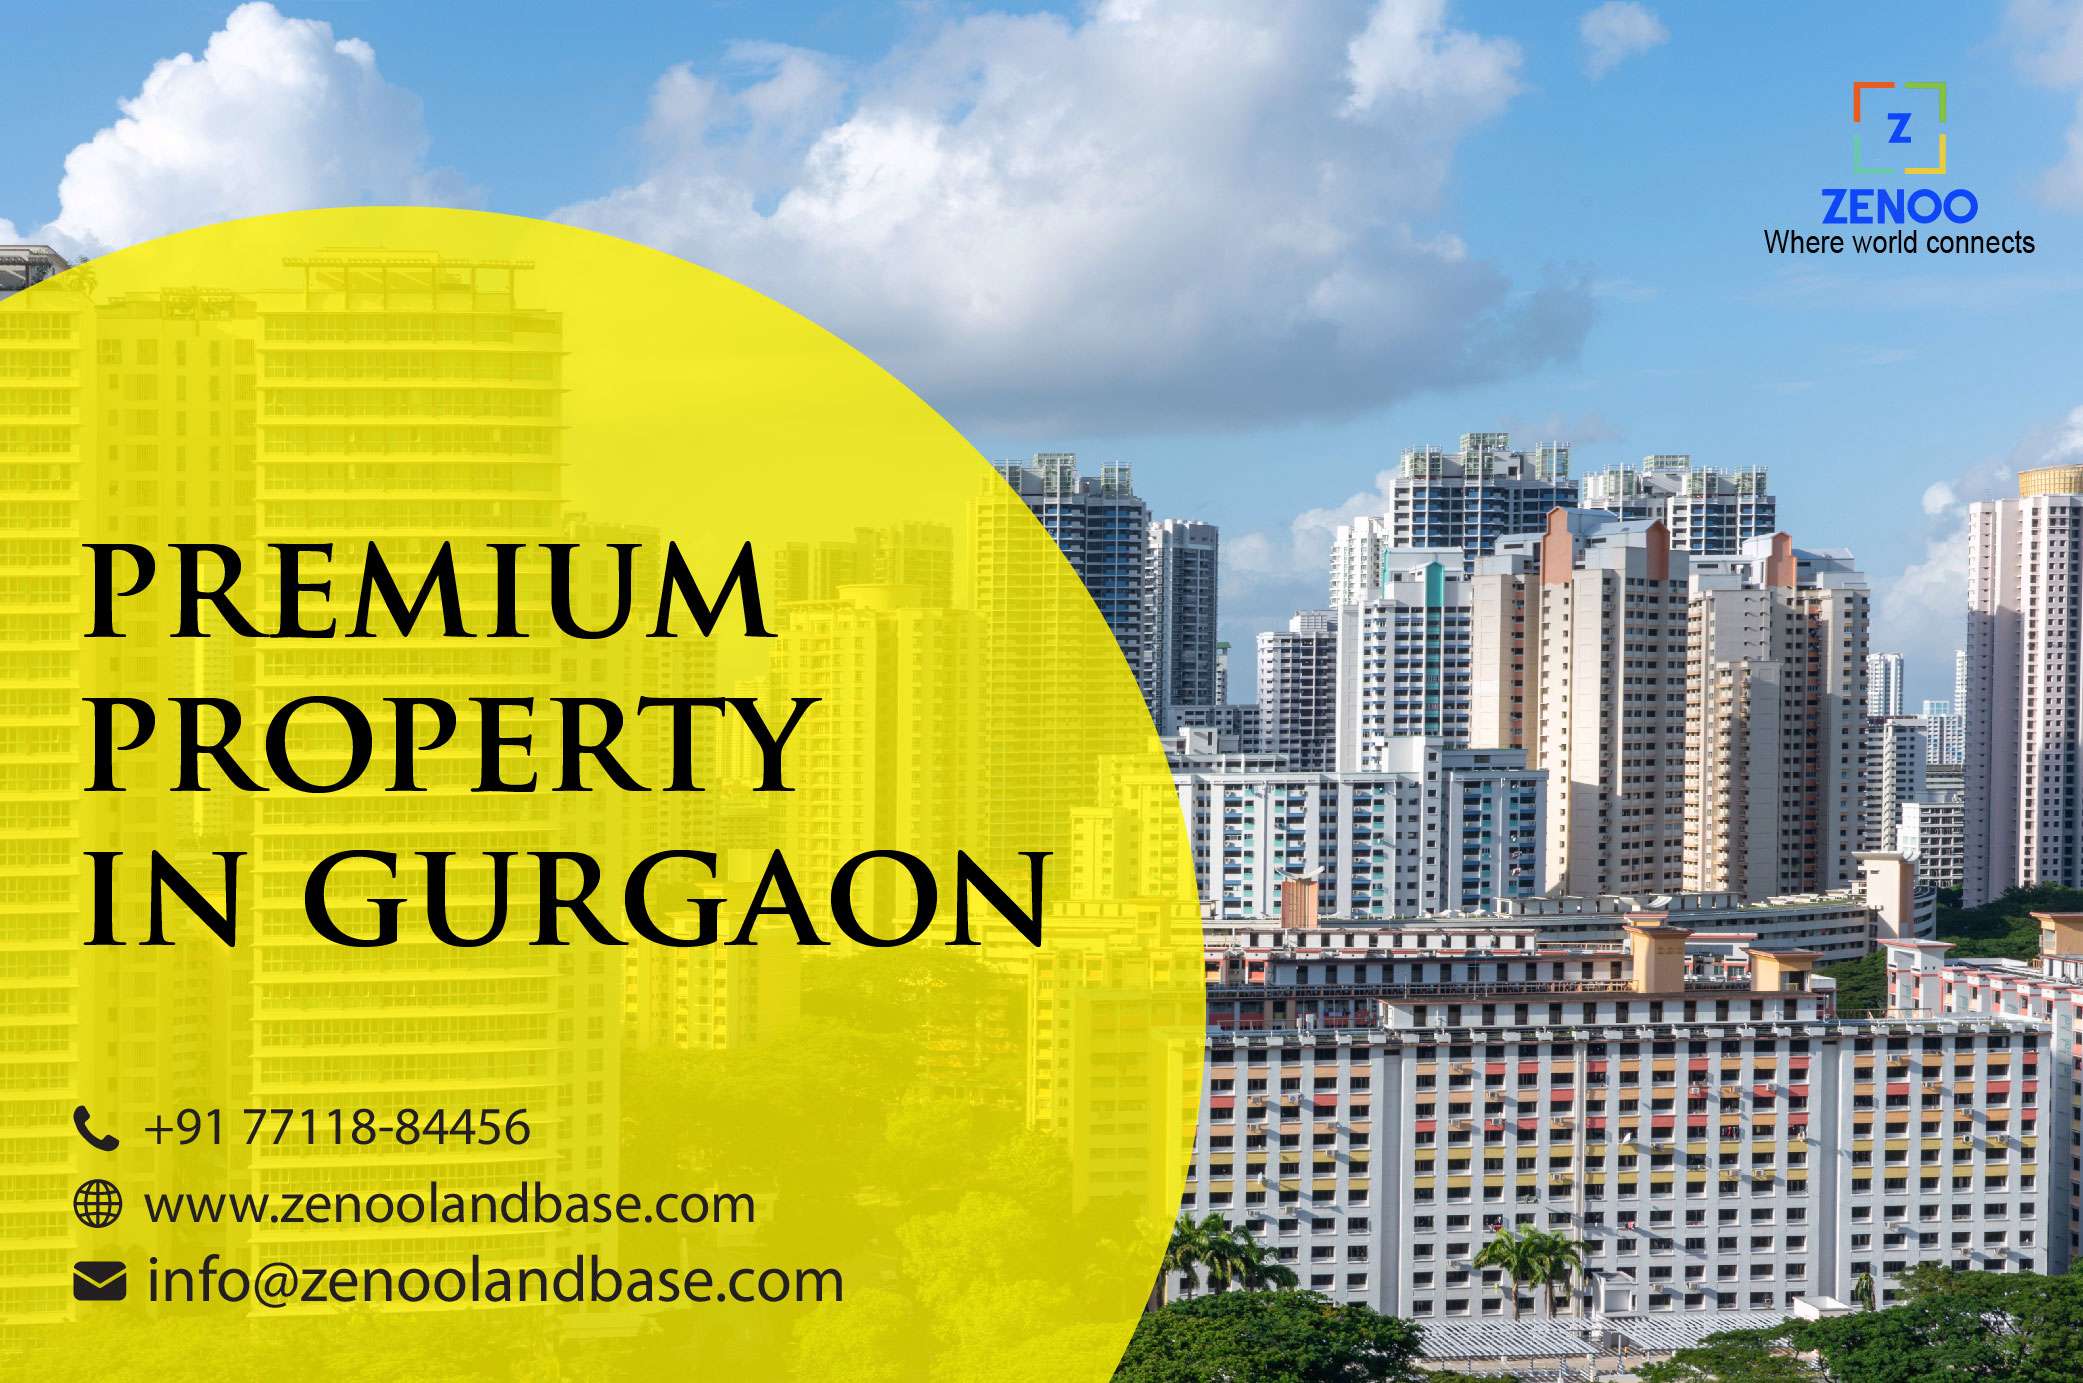 zenoolandbase gurgaon luxury real estate